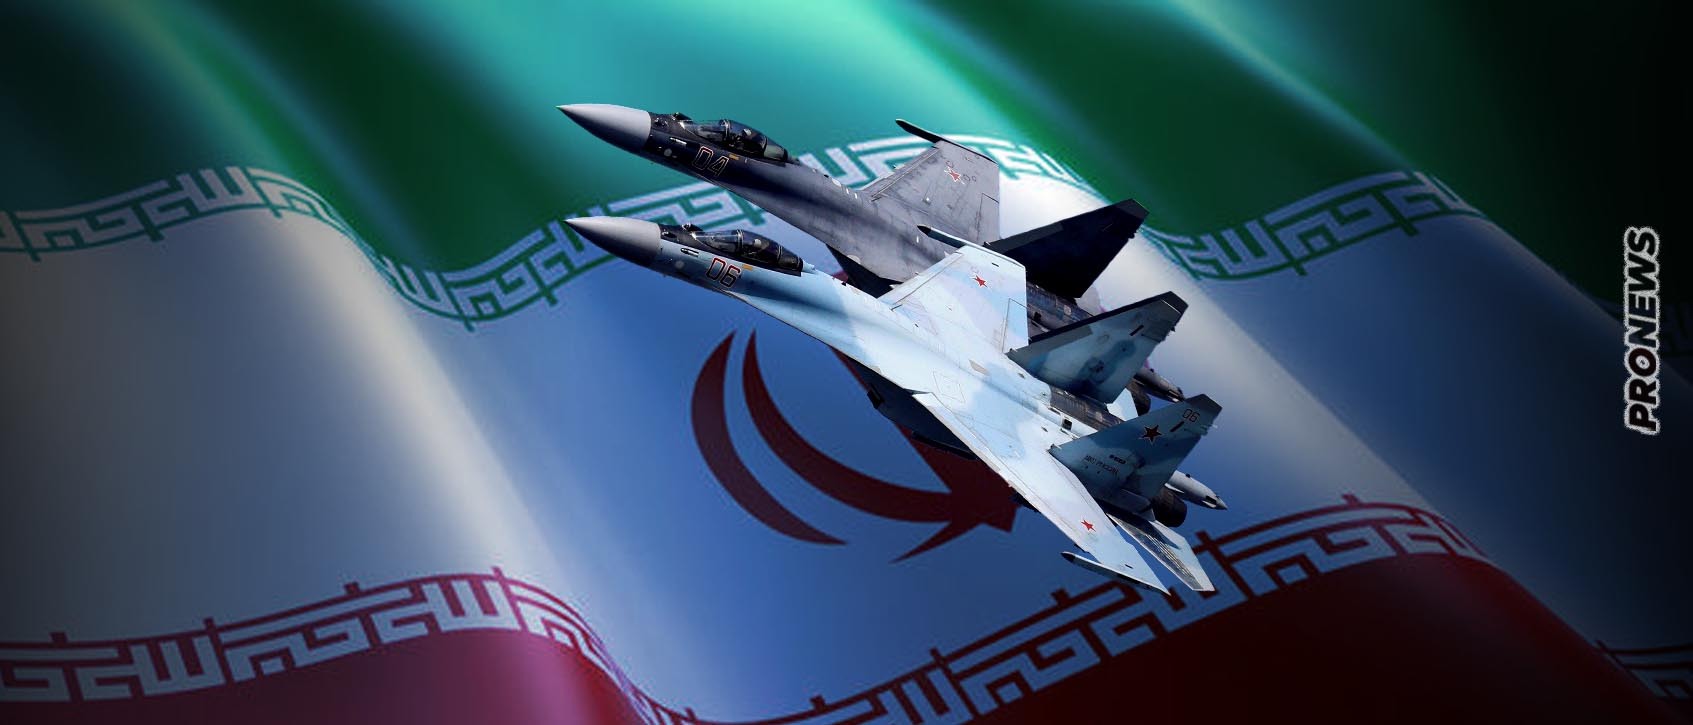 To Iράν παραλαμβάνει τα πρώτα Su-35 την επόμενη εβδομάδα! – Τα πρώτα νέα μαχητικά για την Τεχεράνη μετά από τέσσερις δεκαετίες